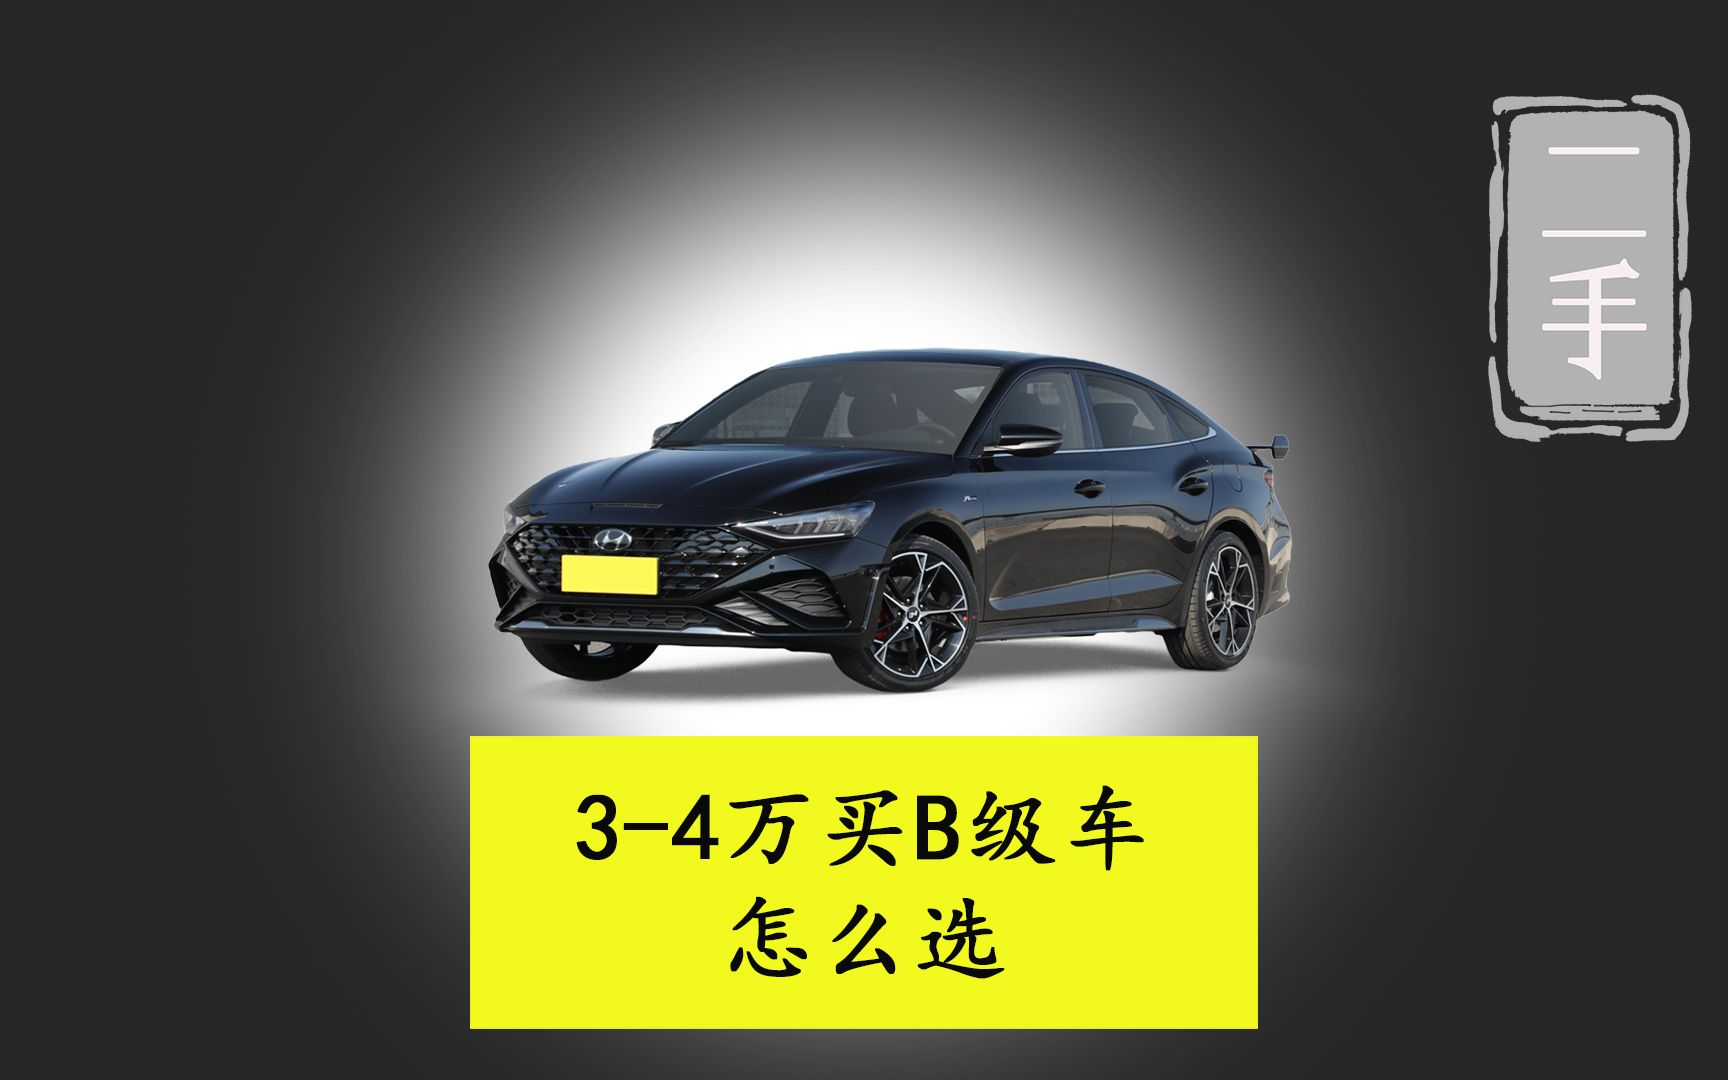 3-4万元买一辆B级车，哪款最值得买?德系日系韩系怎么选？